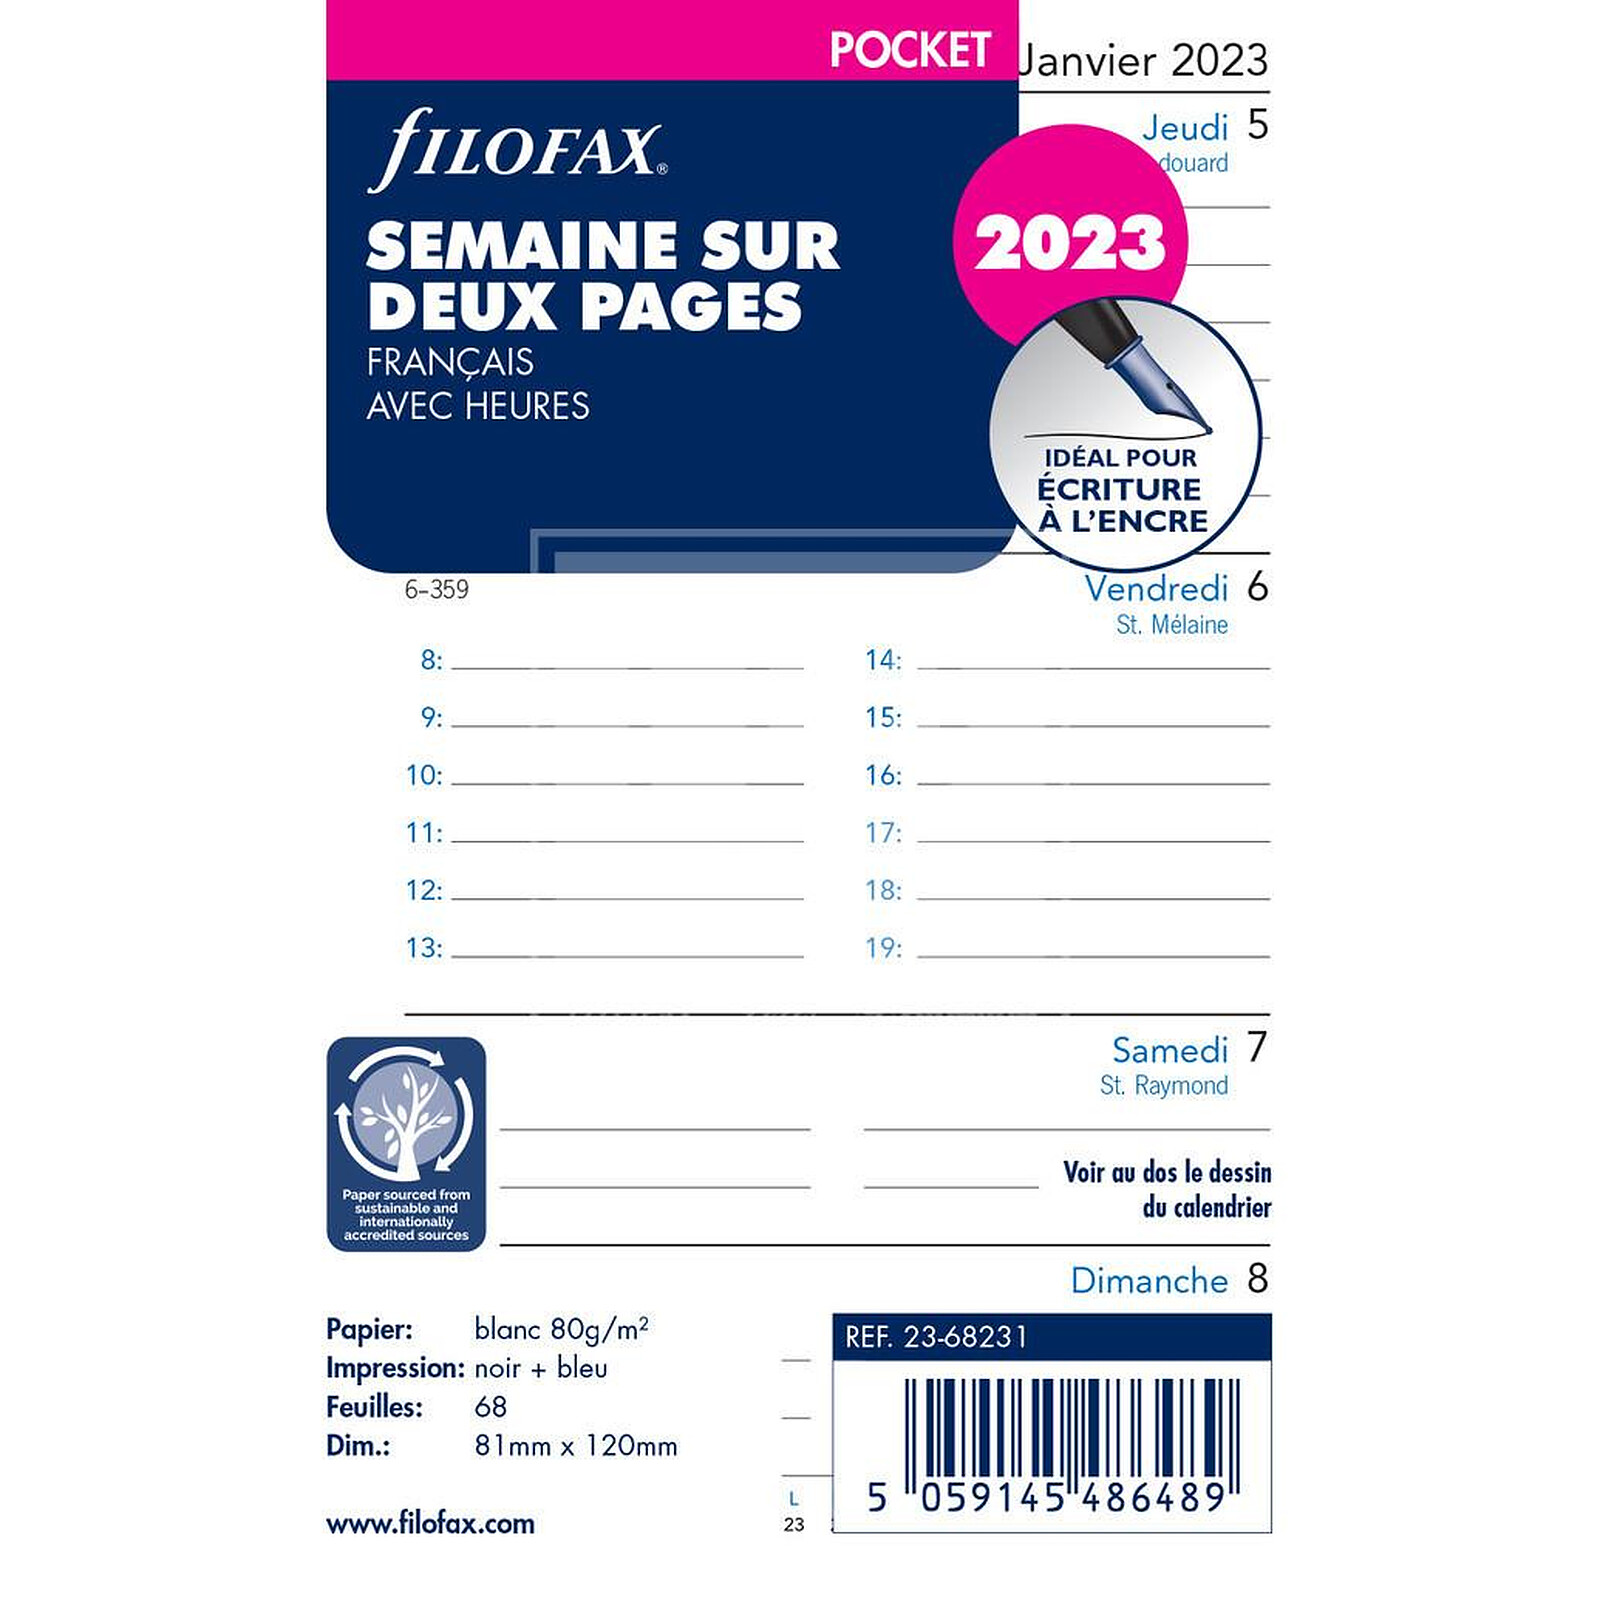 FILOFAX Recharge format pocket Semaine sur deux pages avec Heures -  français - 2023 - Agenda - LDLC